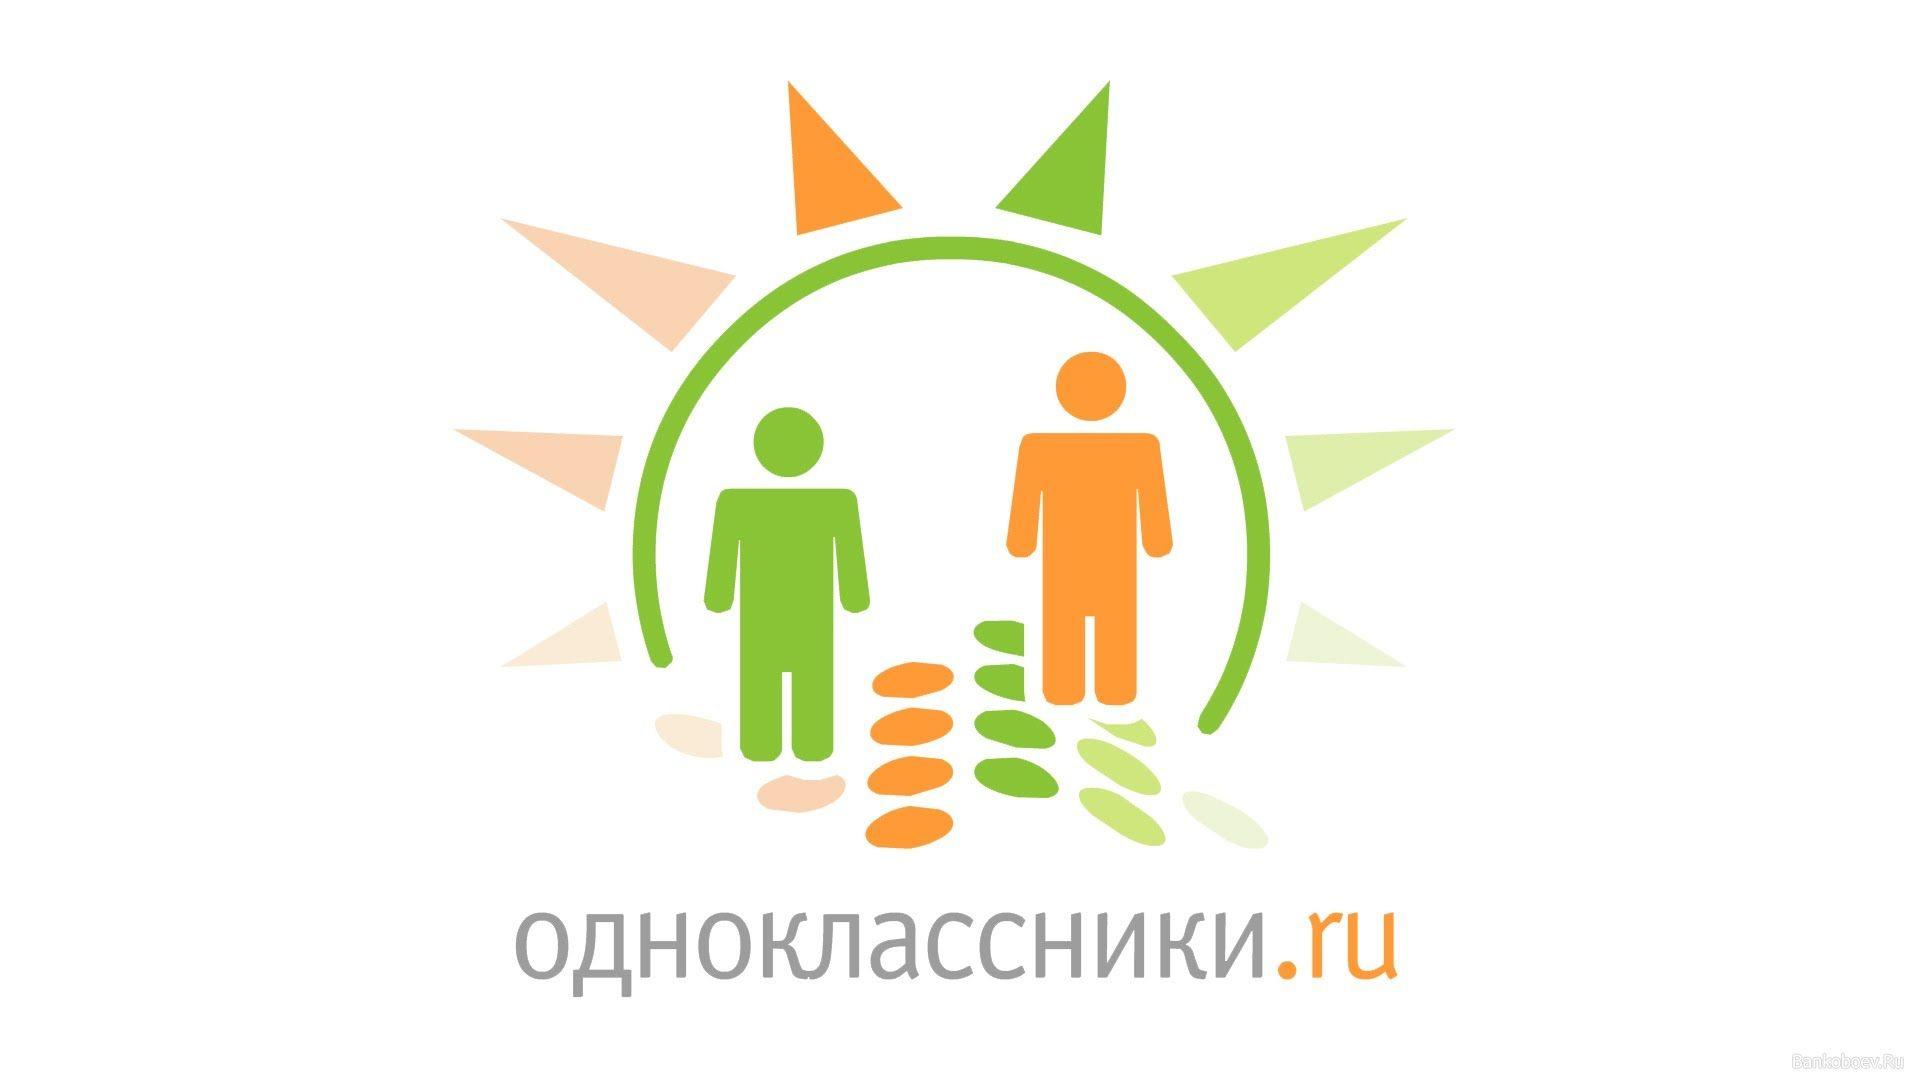 «Одноклассники» запустили рекламу в разделе игр